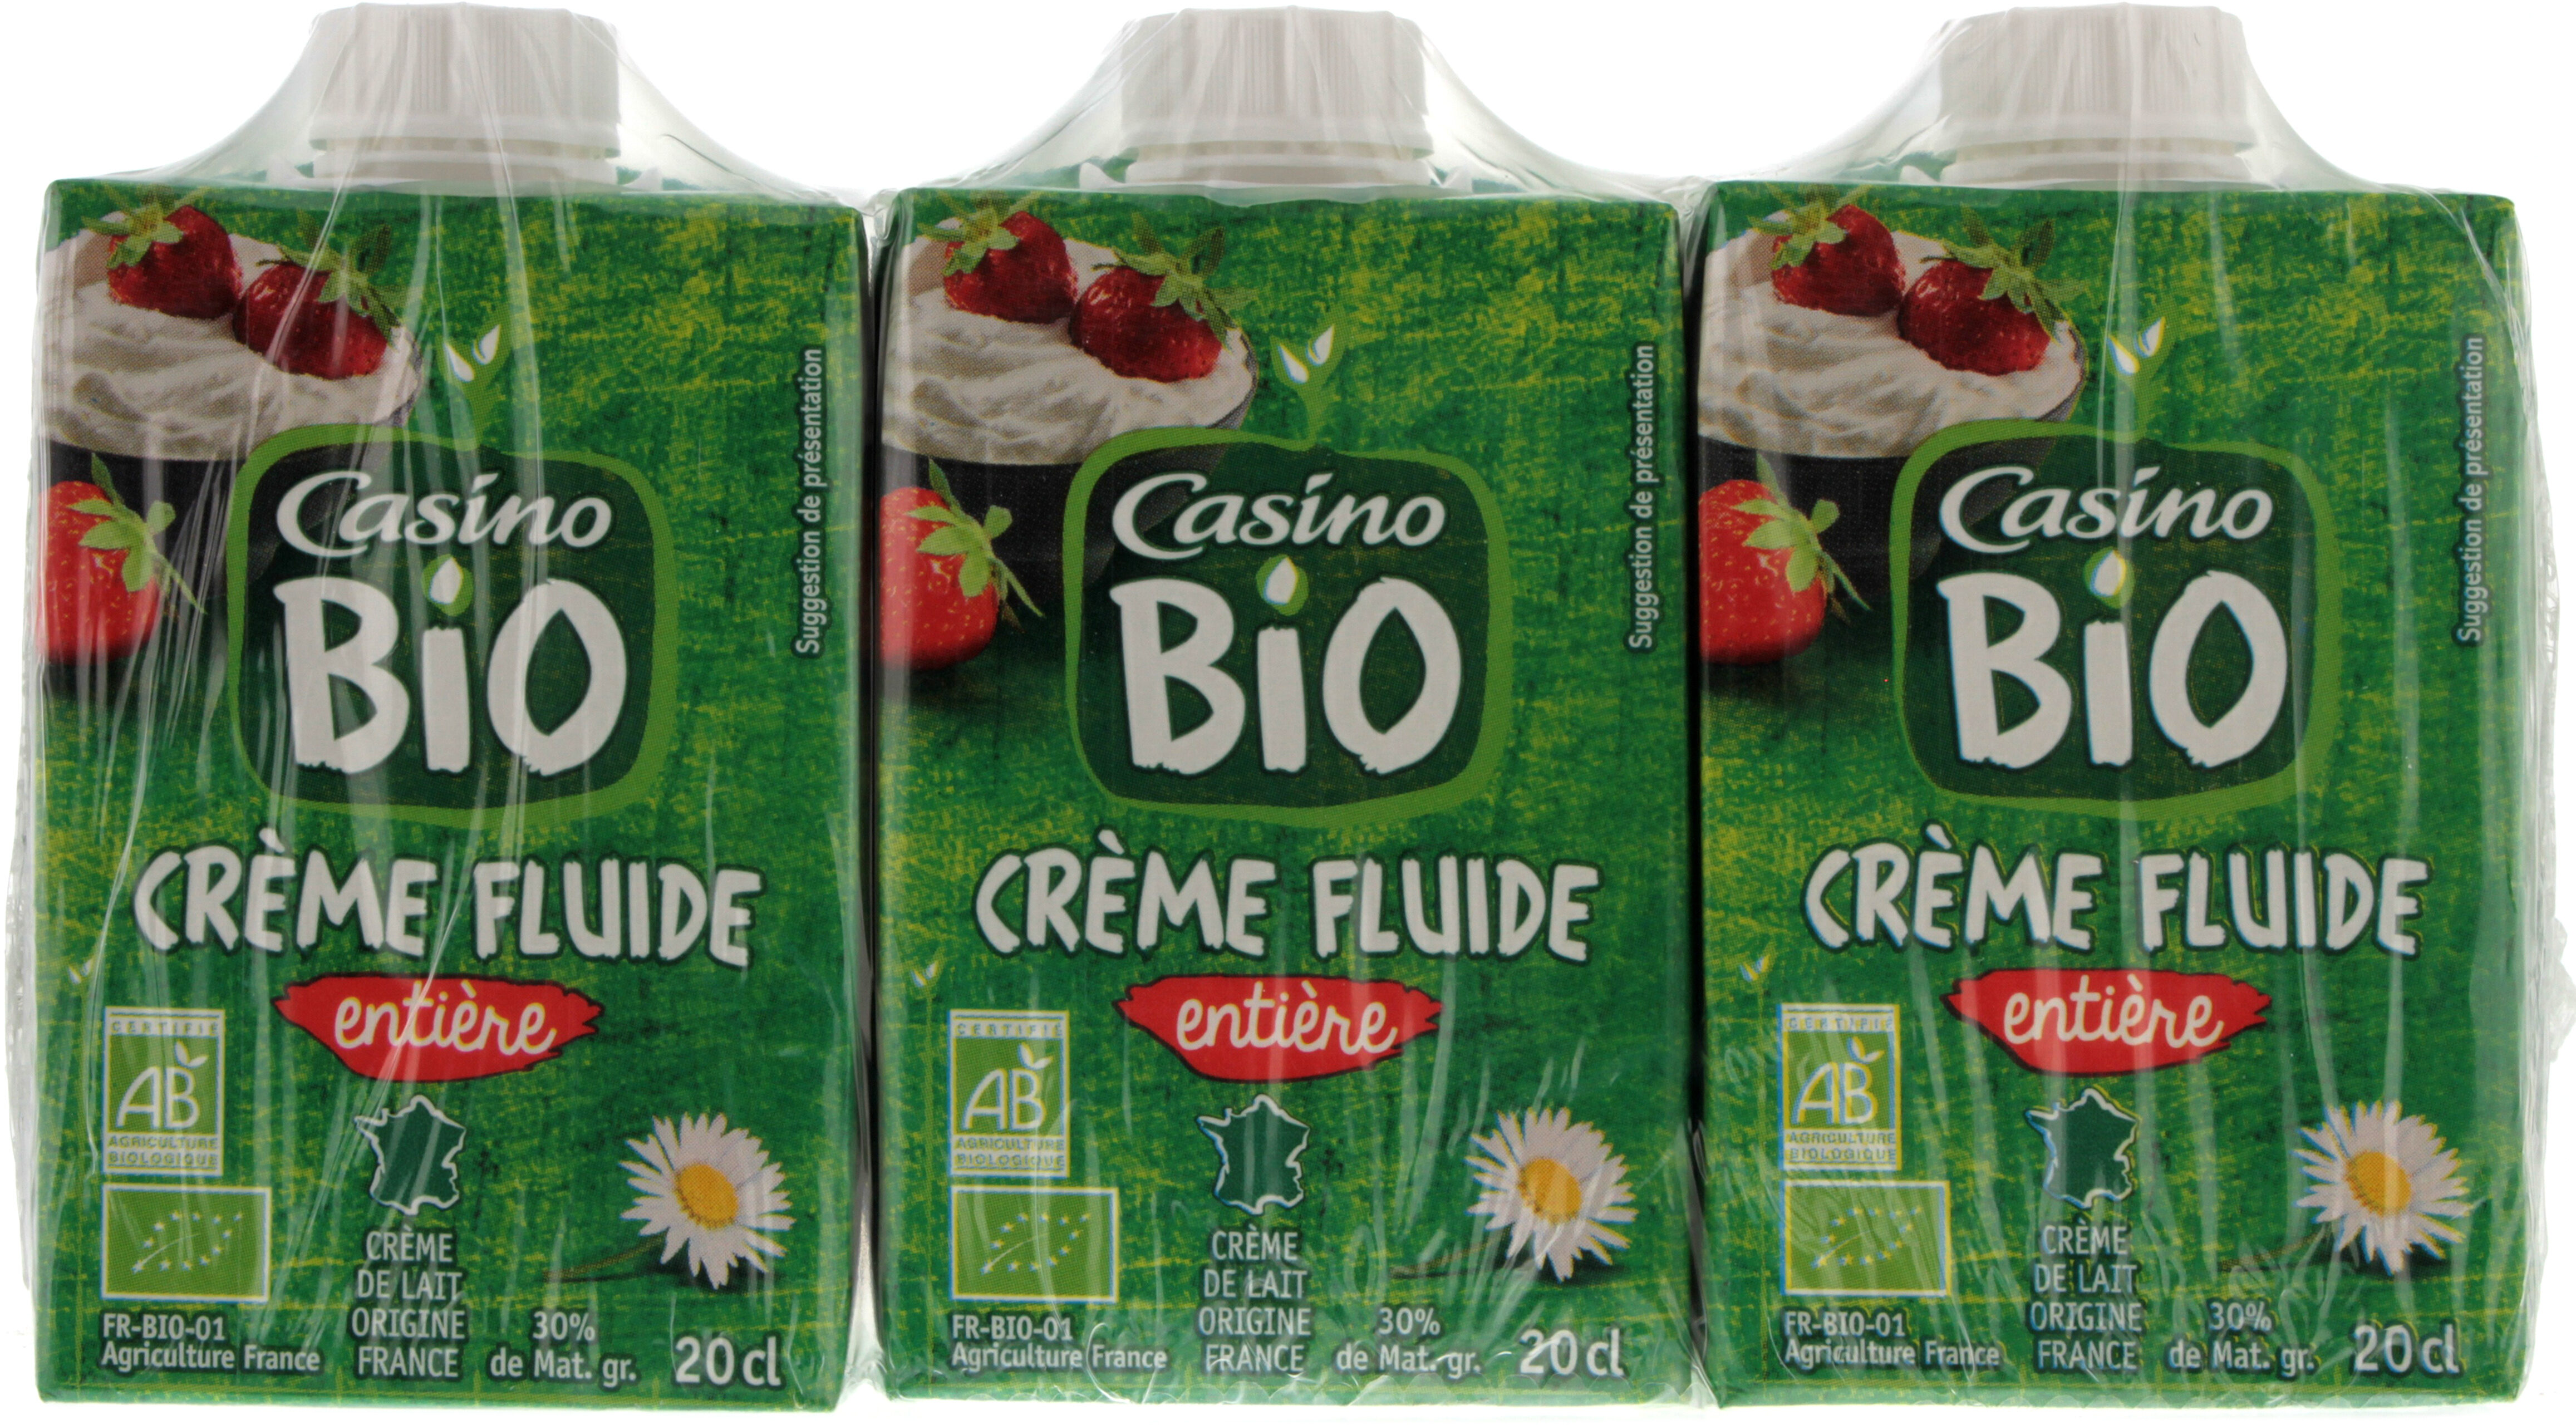 Crème fluide entière 30% de mat. gr. issue de l'agiculture biologique - Produit